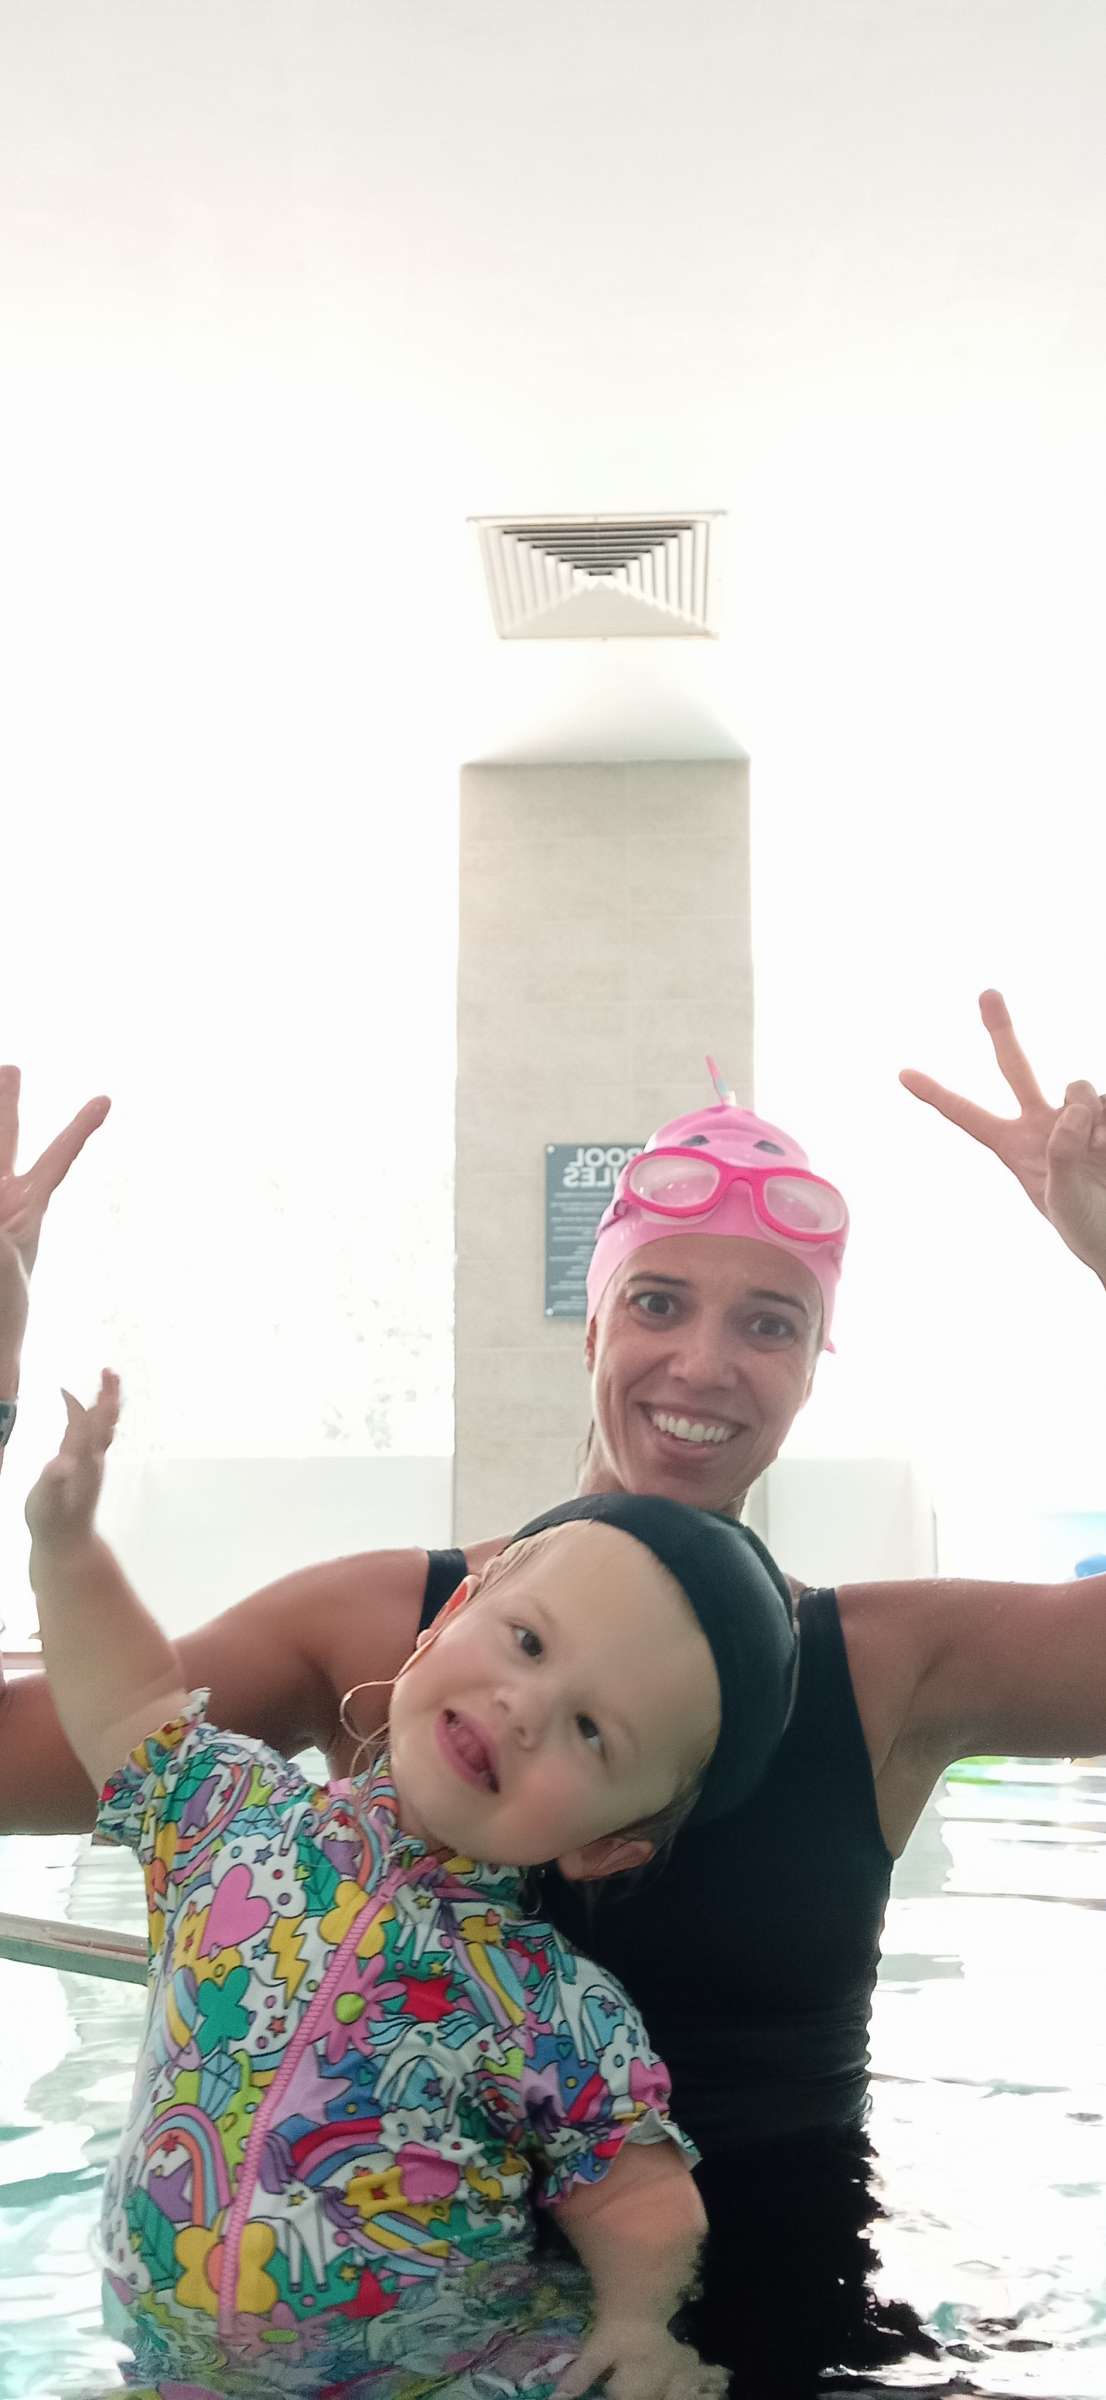 Adriana Massa Swim and Fitness Coach - Oeiras - Aulas de Desporto